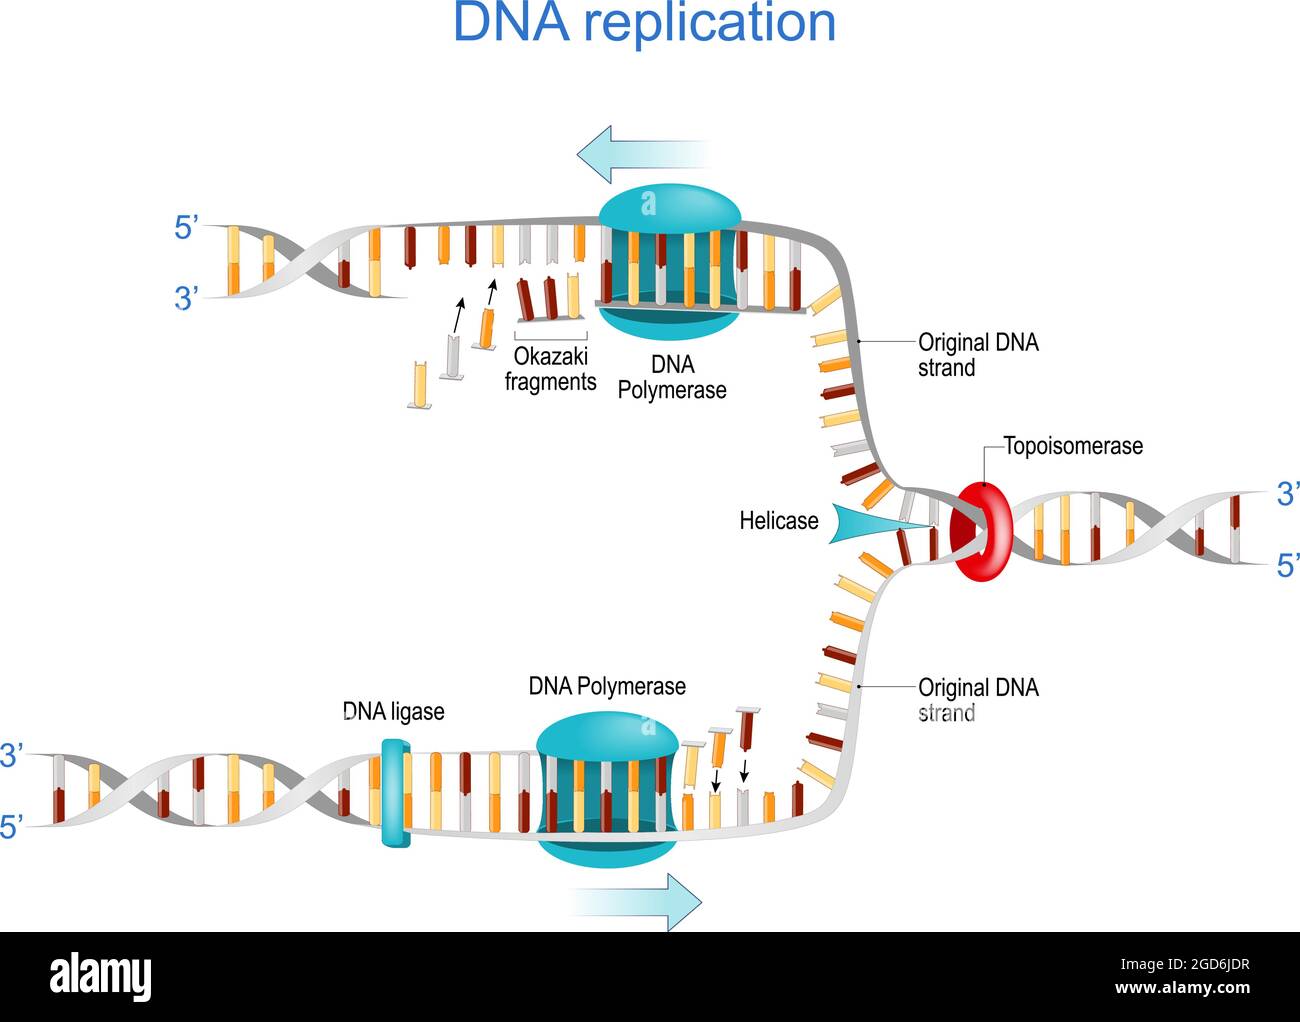 DNA-Replikation. Okazaki-Fragmente, Topoisomerase, Helicase, DNA-Polymerase, DNA-Ligase und RNA. vektordarstellung. Poster für Wissenschaft und Bildung Stock Vektor